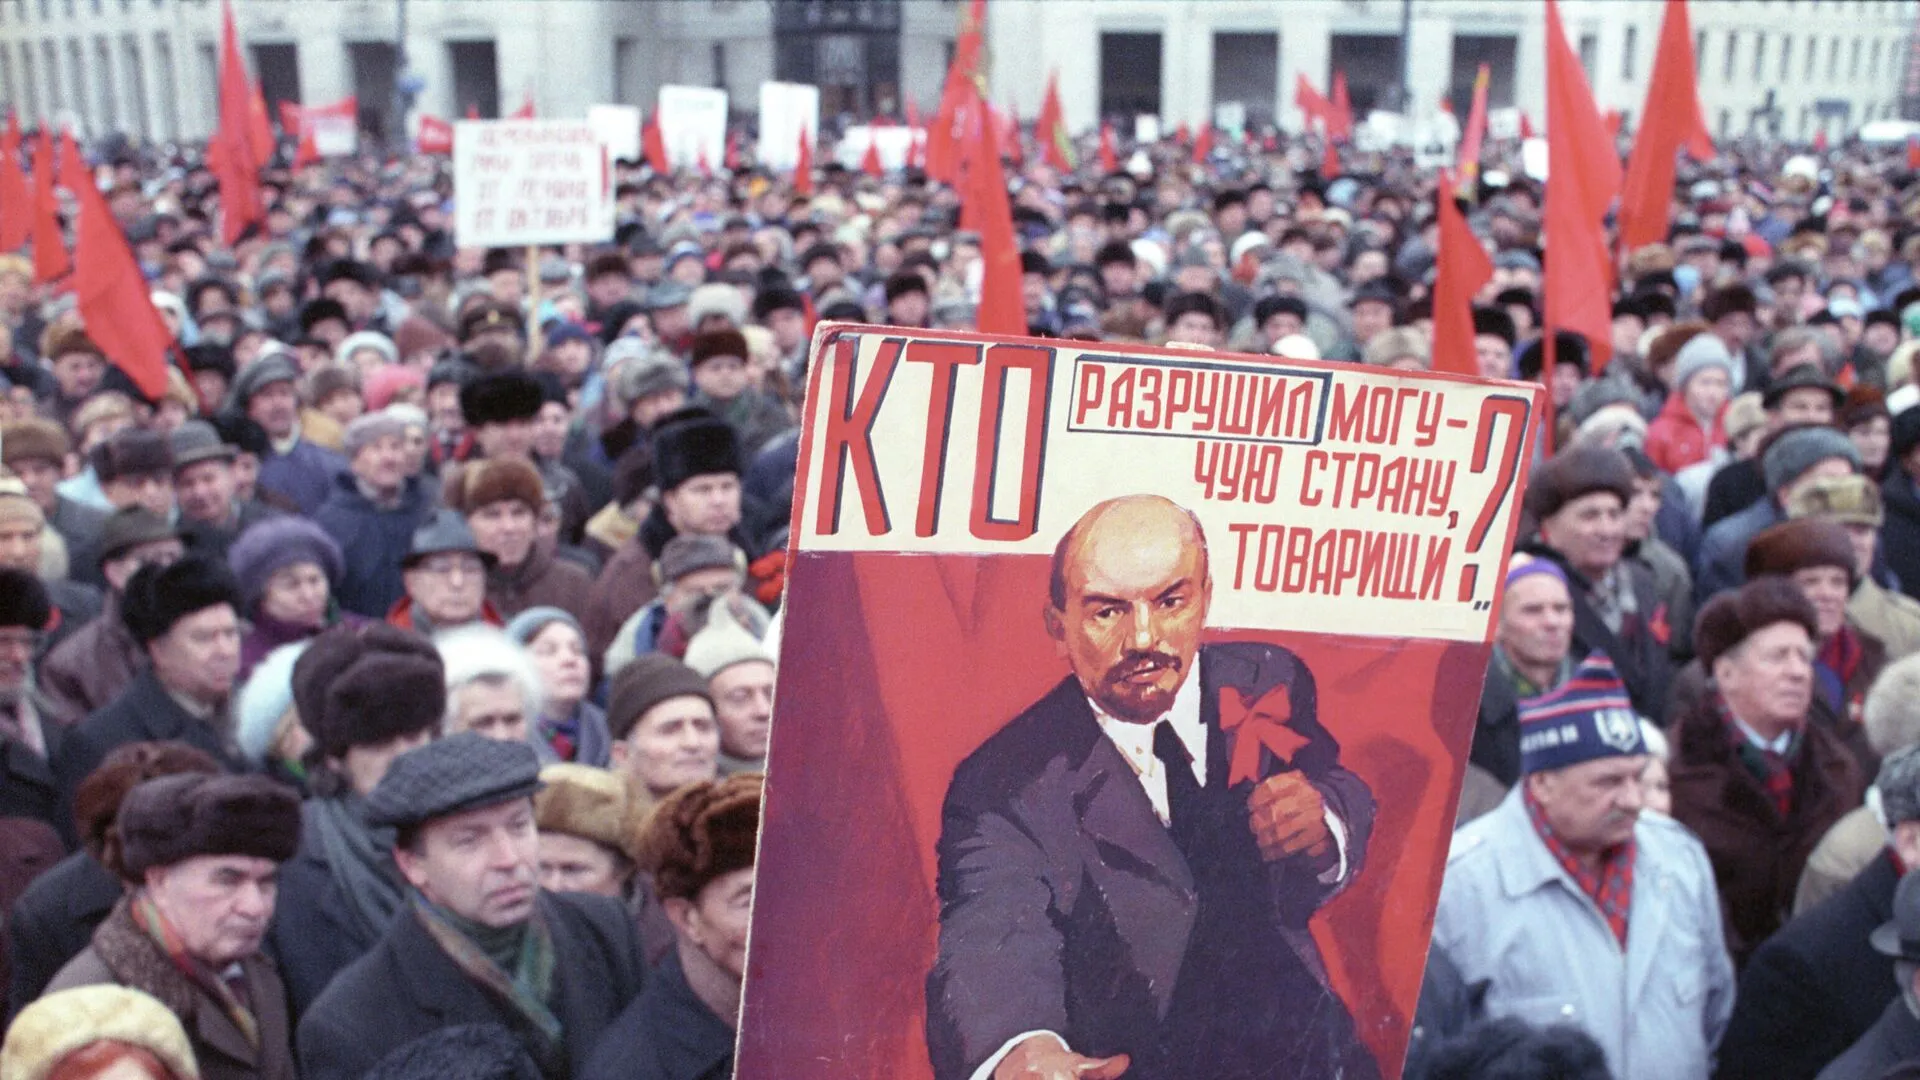 7 Ноября 1991 года демонстрация в Москве. Демонстрация в Москве 7 ноября в СССР. Декабрь 1991 развал СССР. Митинг за распад СССР 1991.